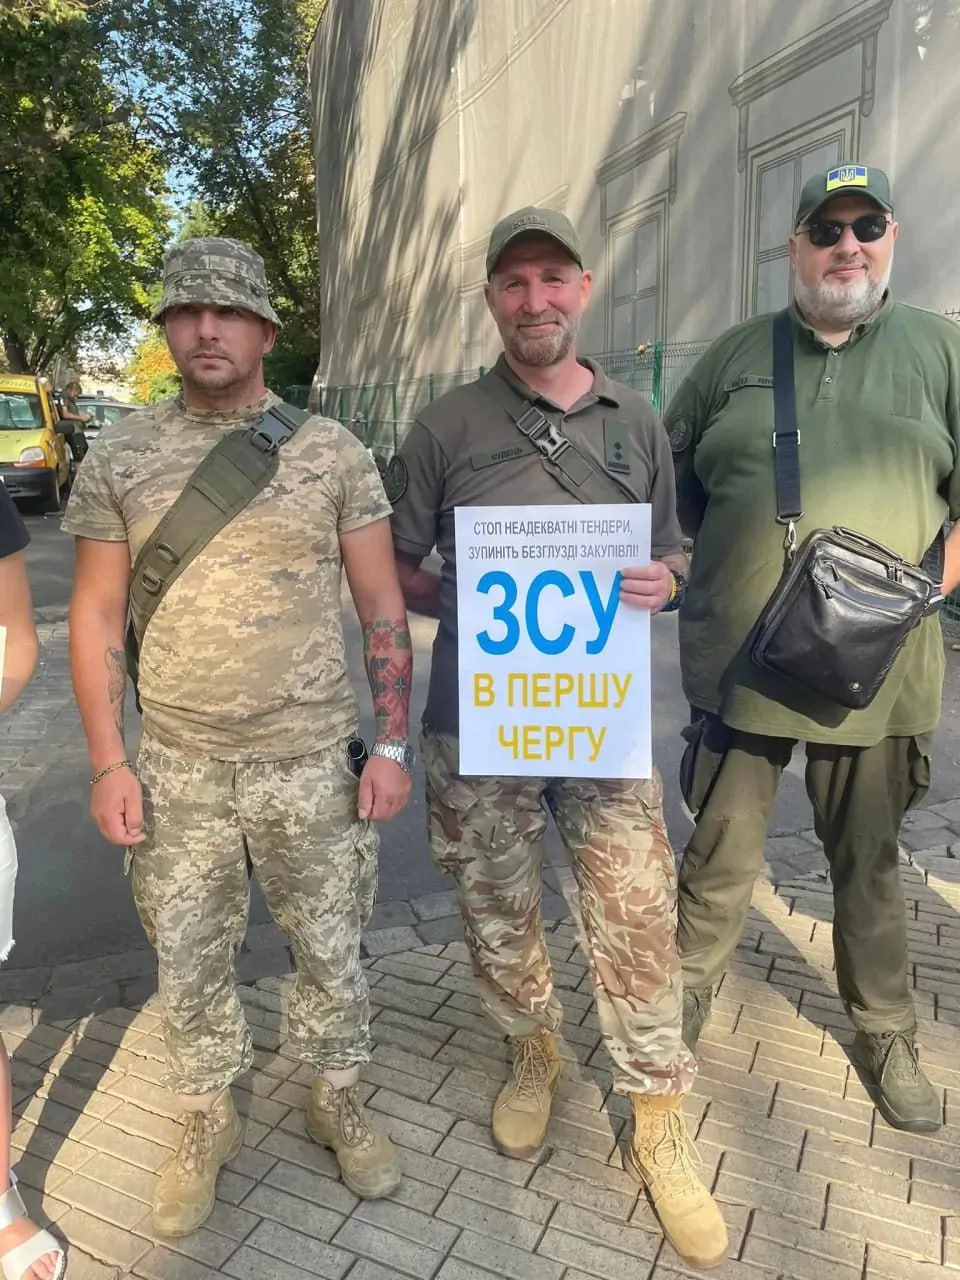 Грузите топливо бочками. Одесские военные украина